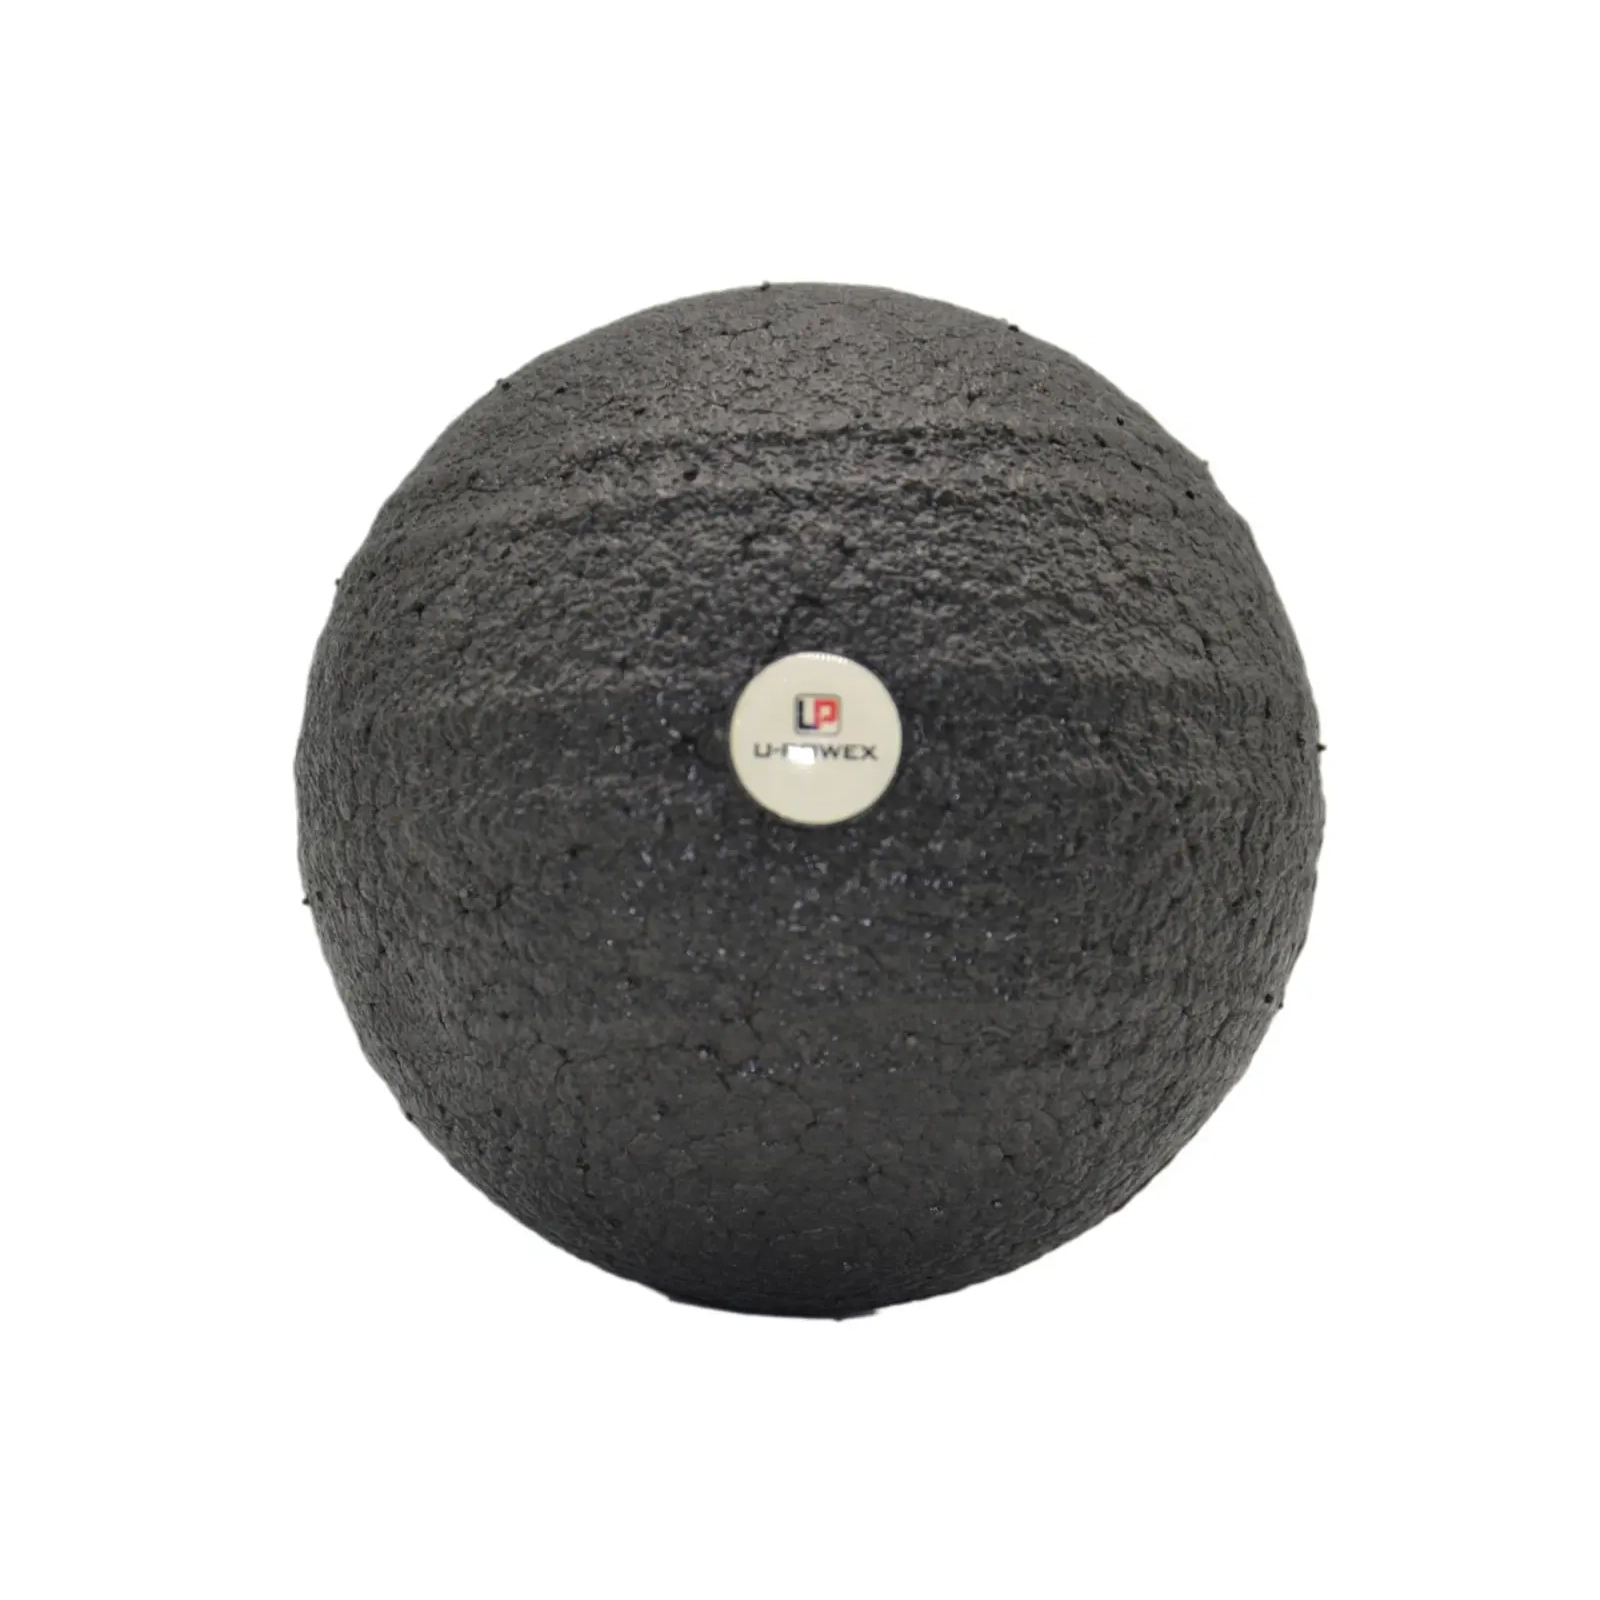 Масажний м'яч U-Powex Epp foam ball d10 Black (UP_1003_Ball_D10cm) зображення 2